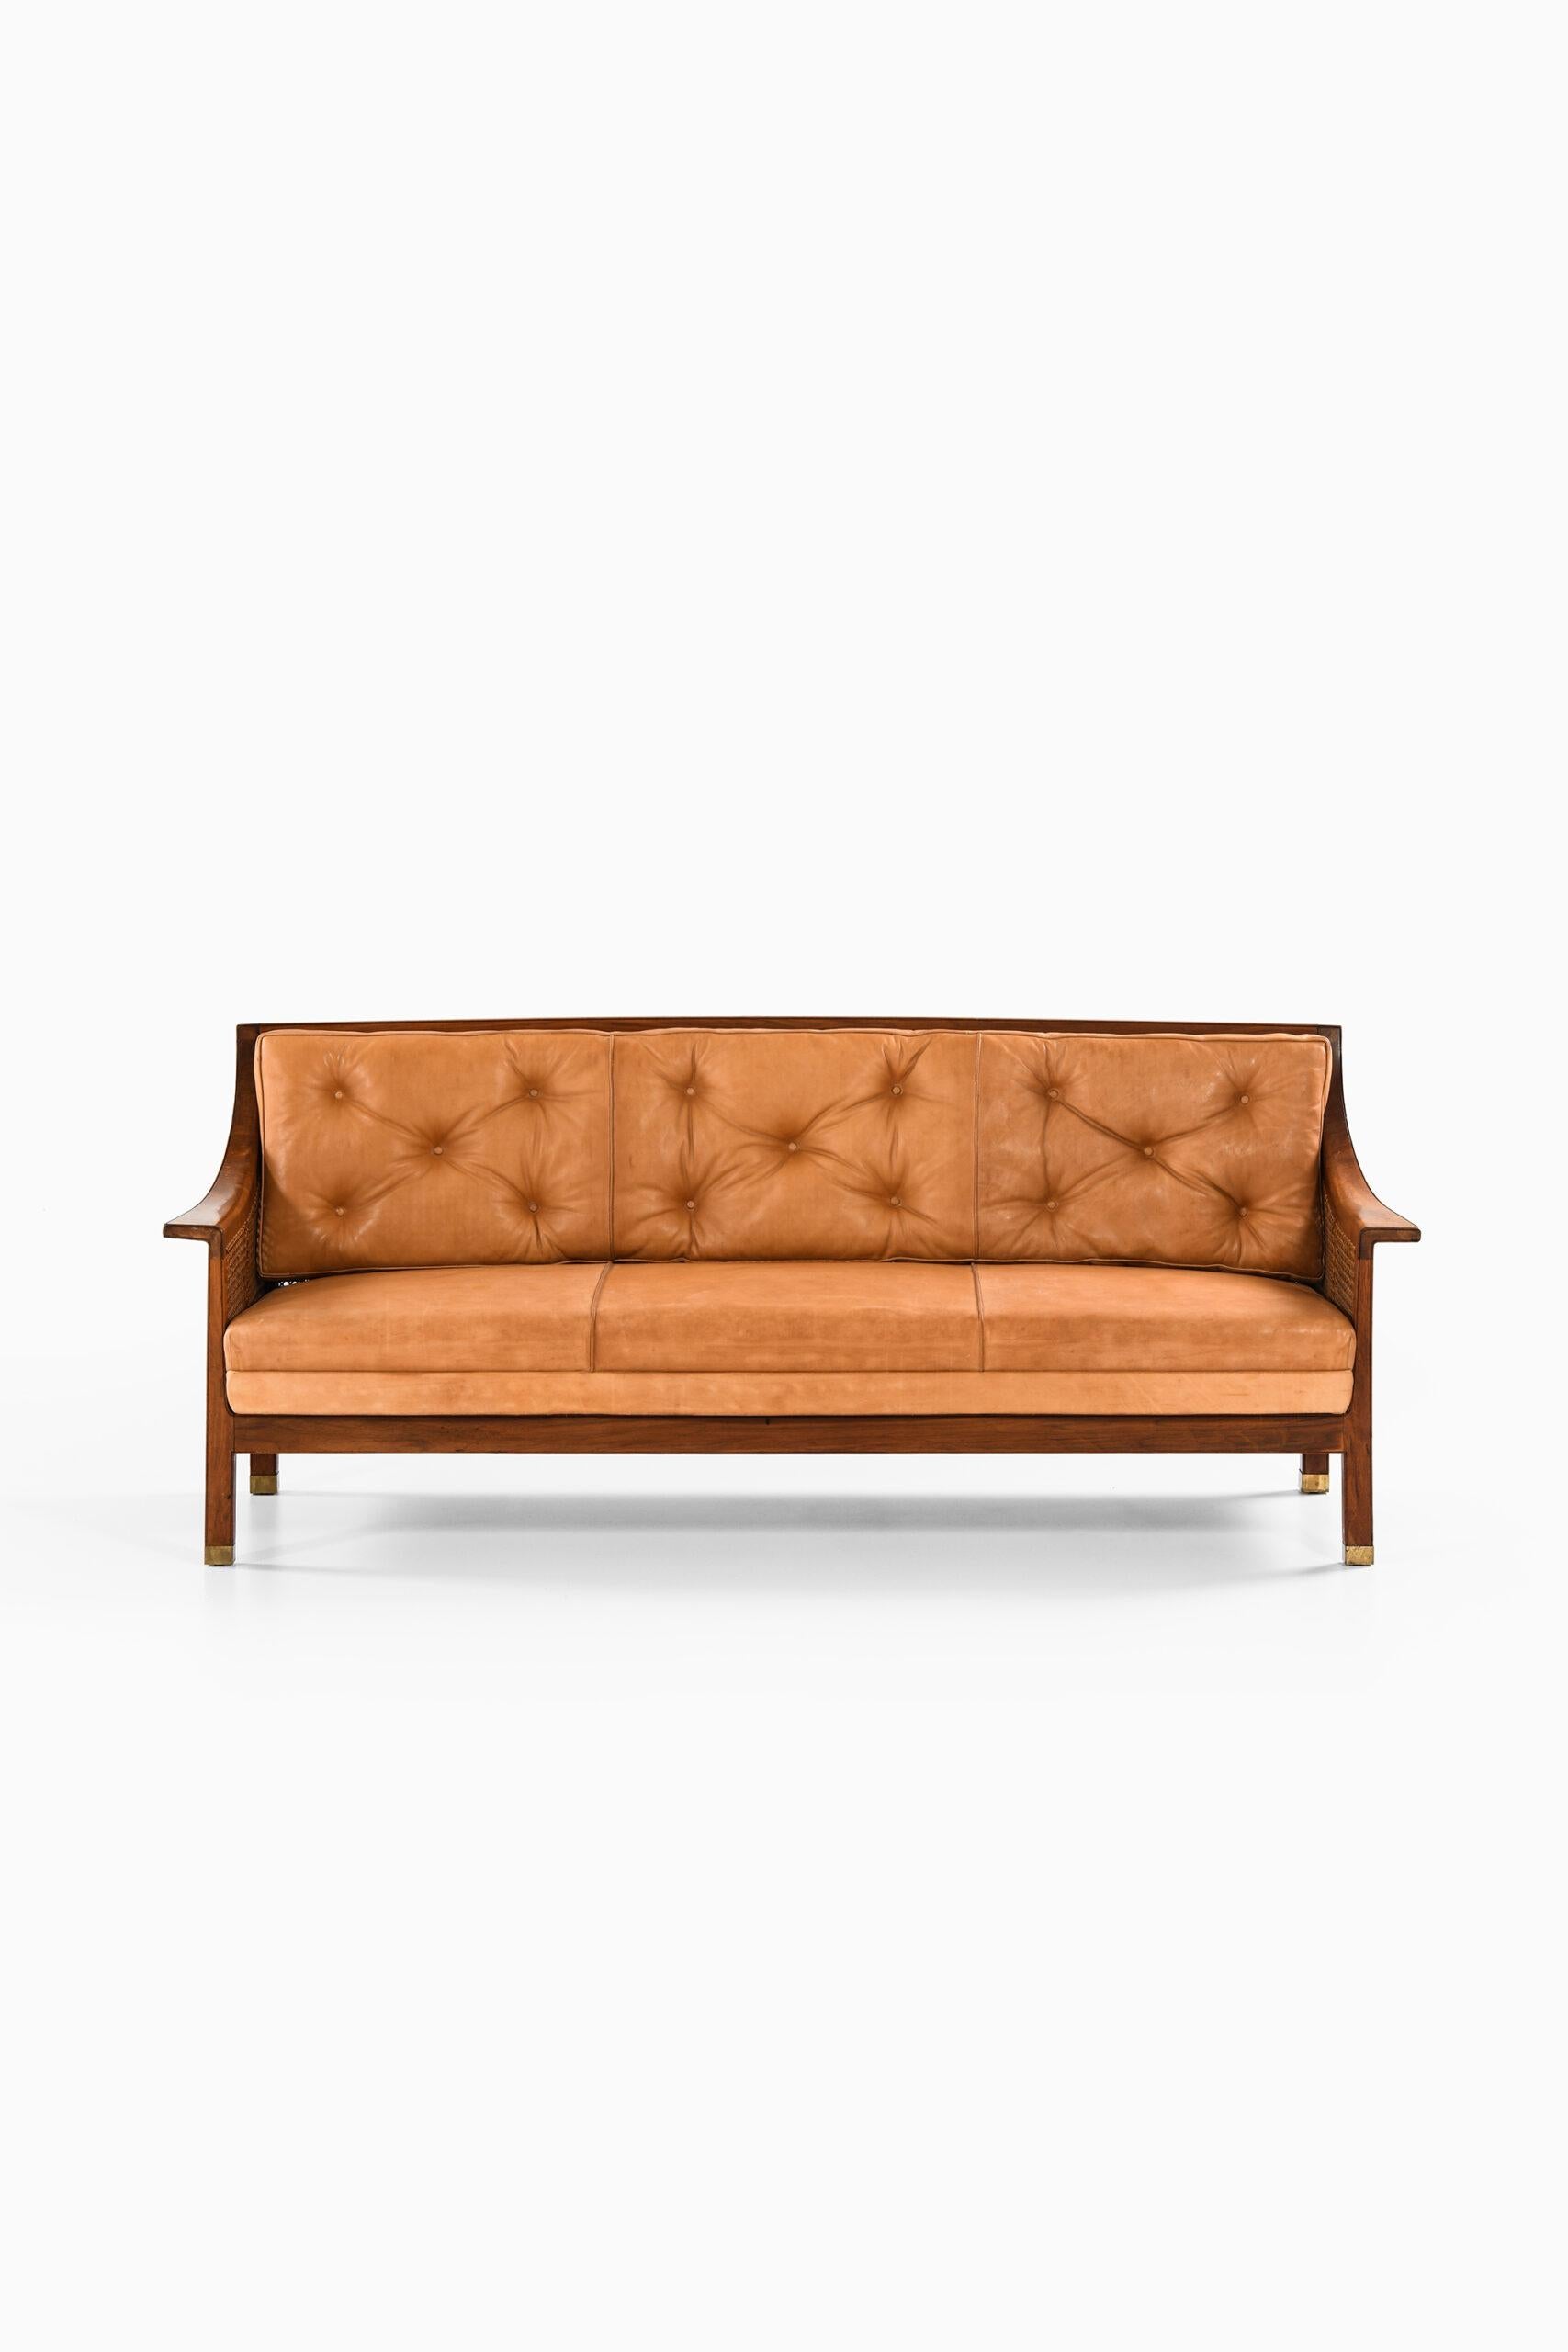 Canapé autoportant unique conçu par Arne Jacobsen. Produit par l'ébéniste Otto Meyers au Danemark.

Provenance : 
Éditeur Fergo, donc par filiation dans la famille. Le canapé a été conçu le 17 février 1927 dans le cadre de l'aménagement d'une